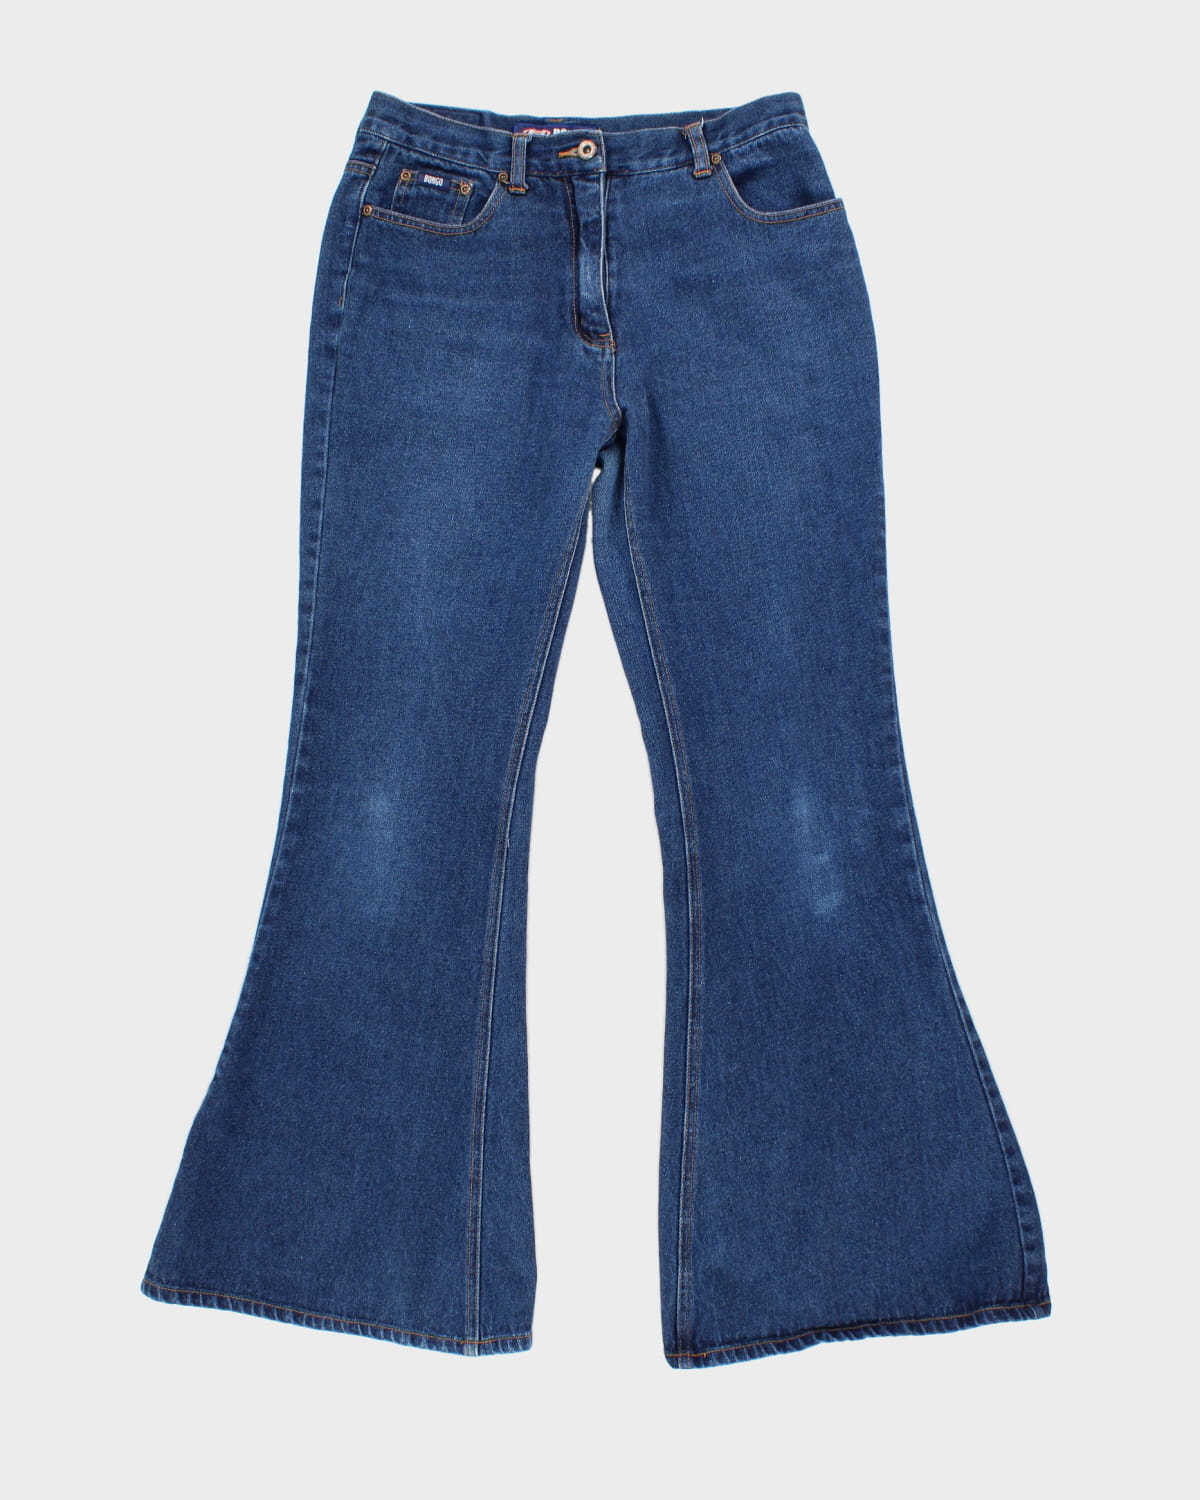 Vintage 90s/00s Bongo Flare Jeans - W30 L31